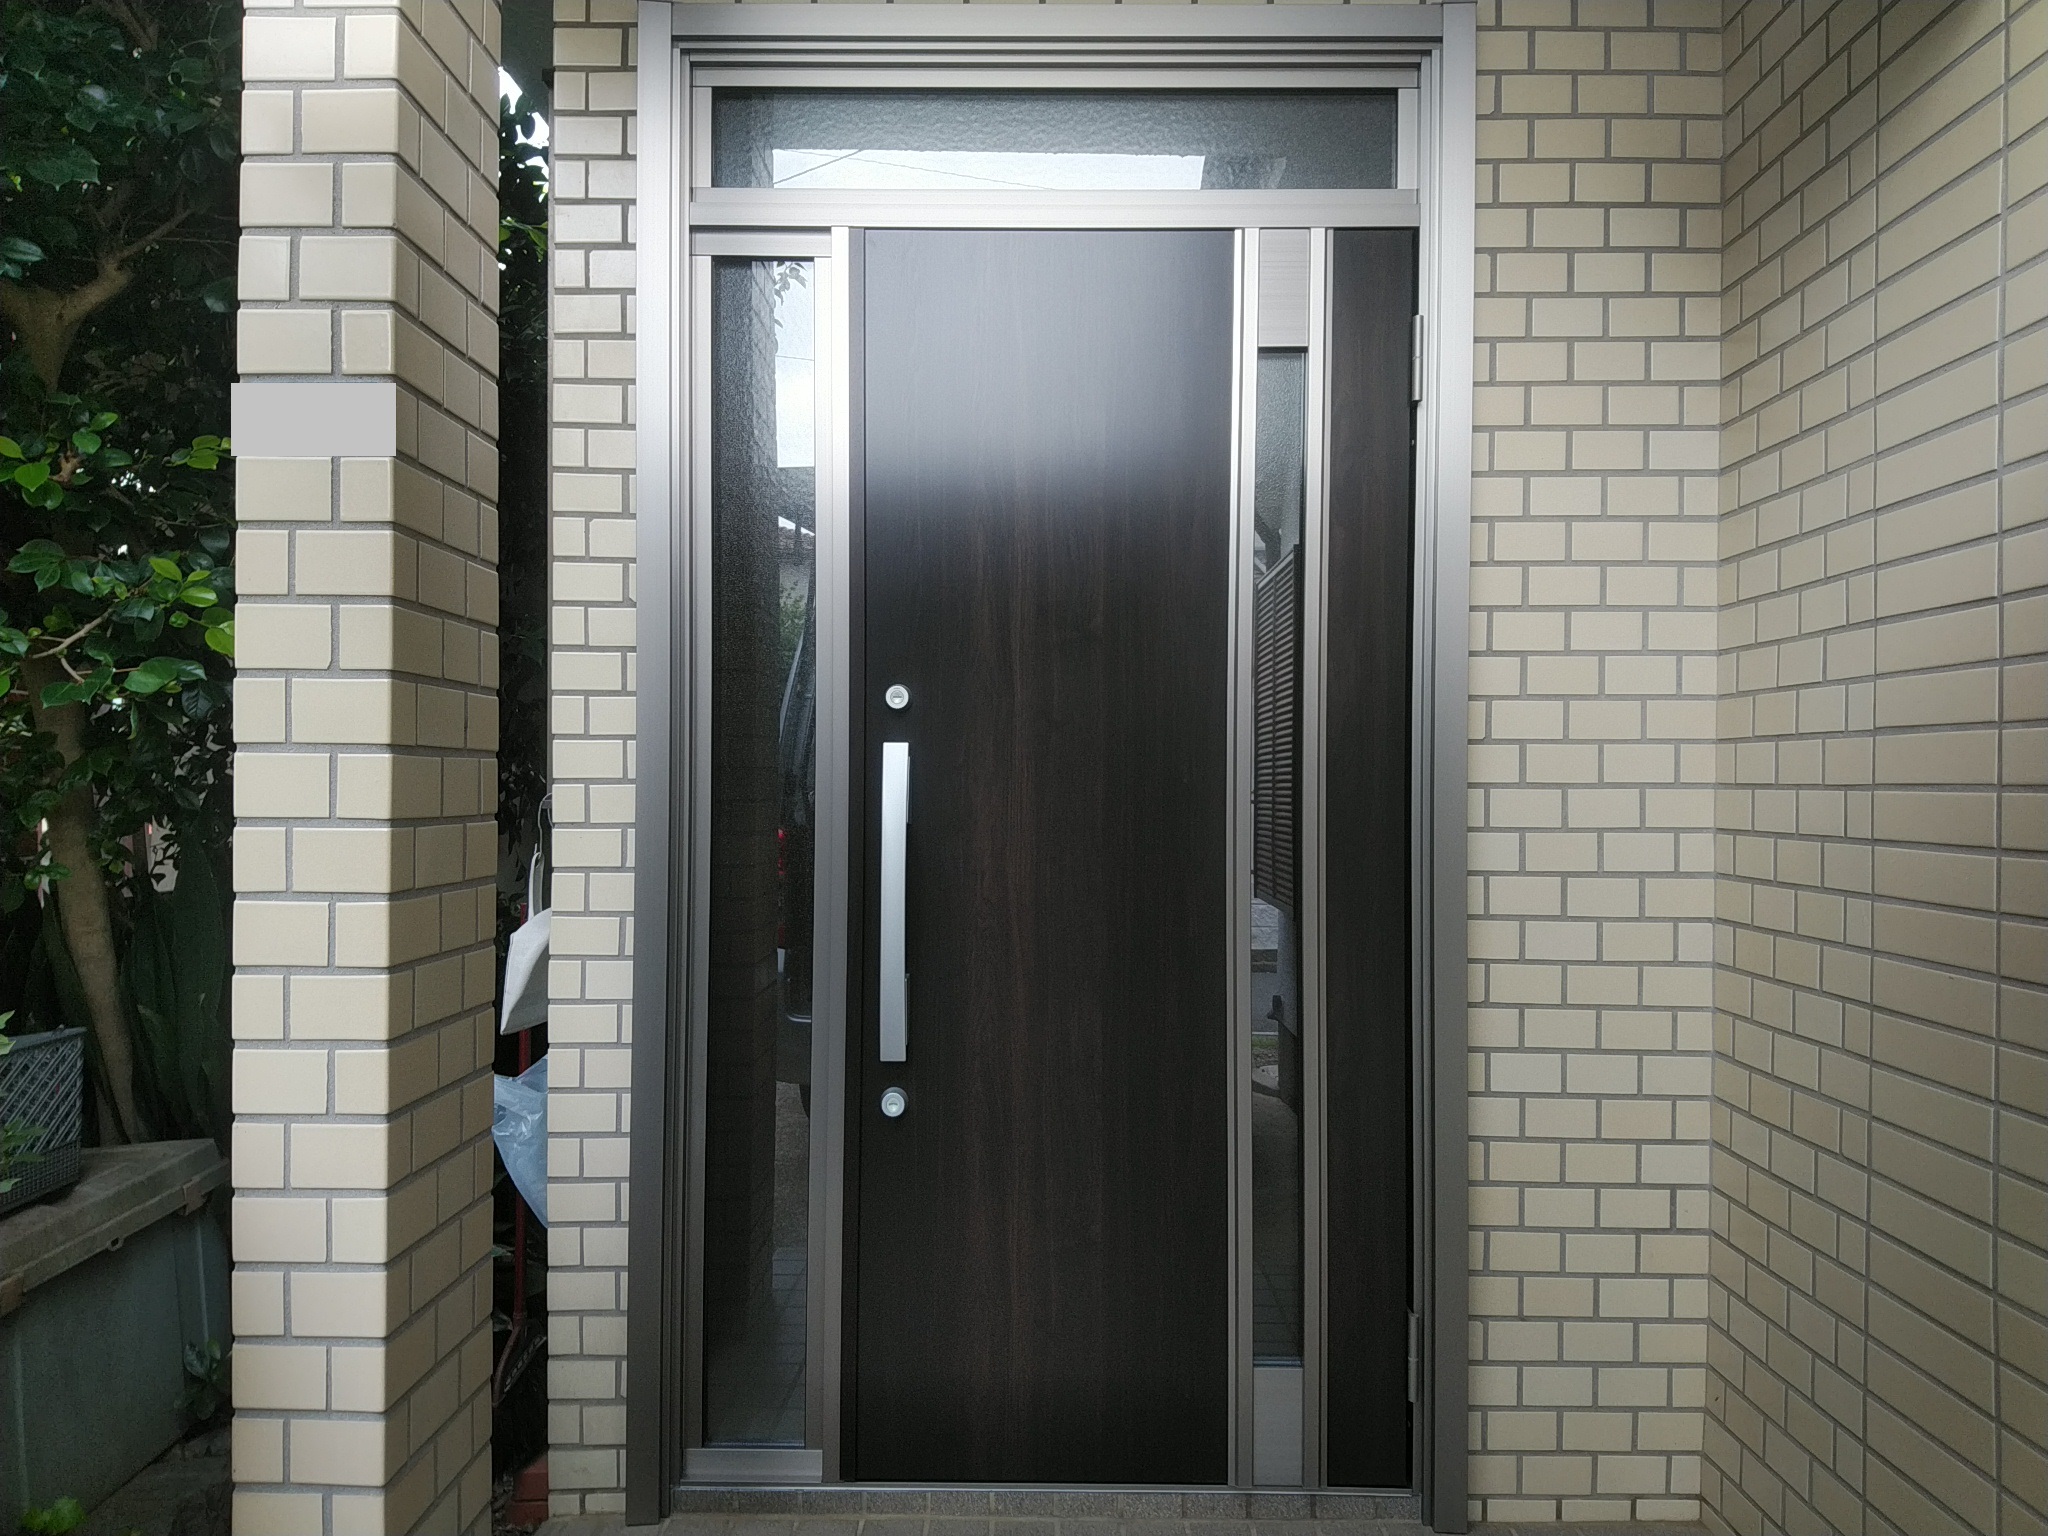 同じ片袖ランマ付きのドアでもドアの大きさを大きくすると高級感が増します【LIXILリシェントM78型】玄関ドアのリフォームなら玄関ドア